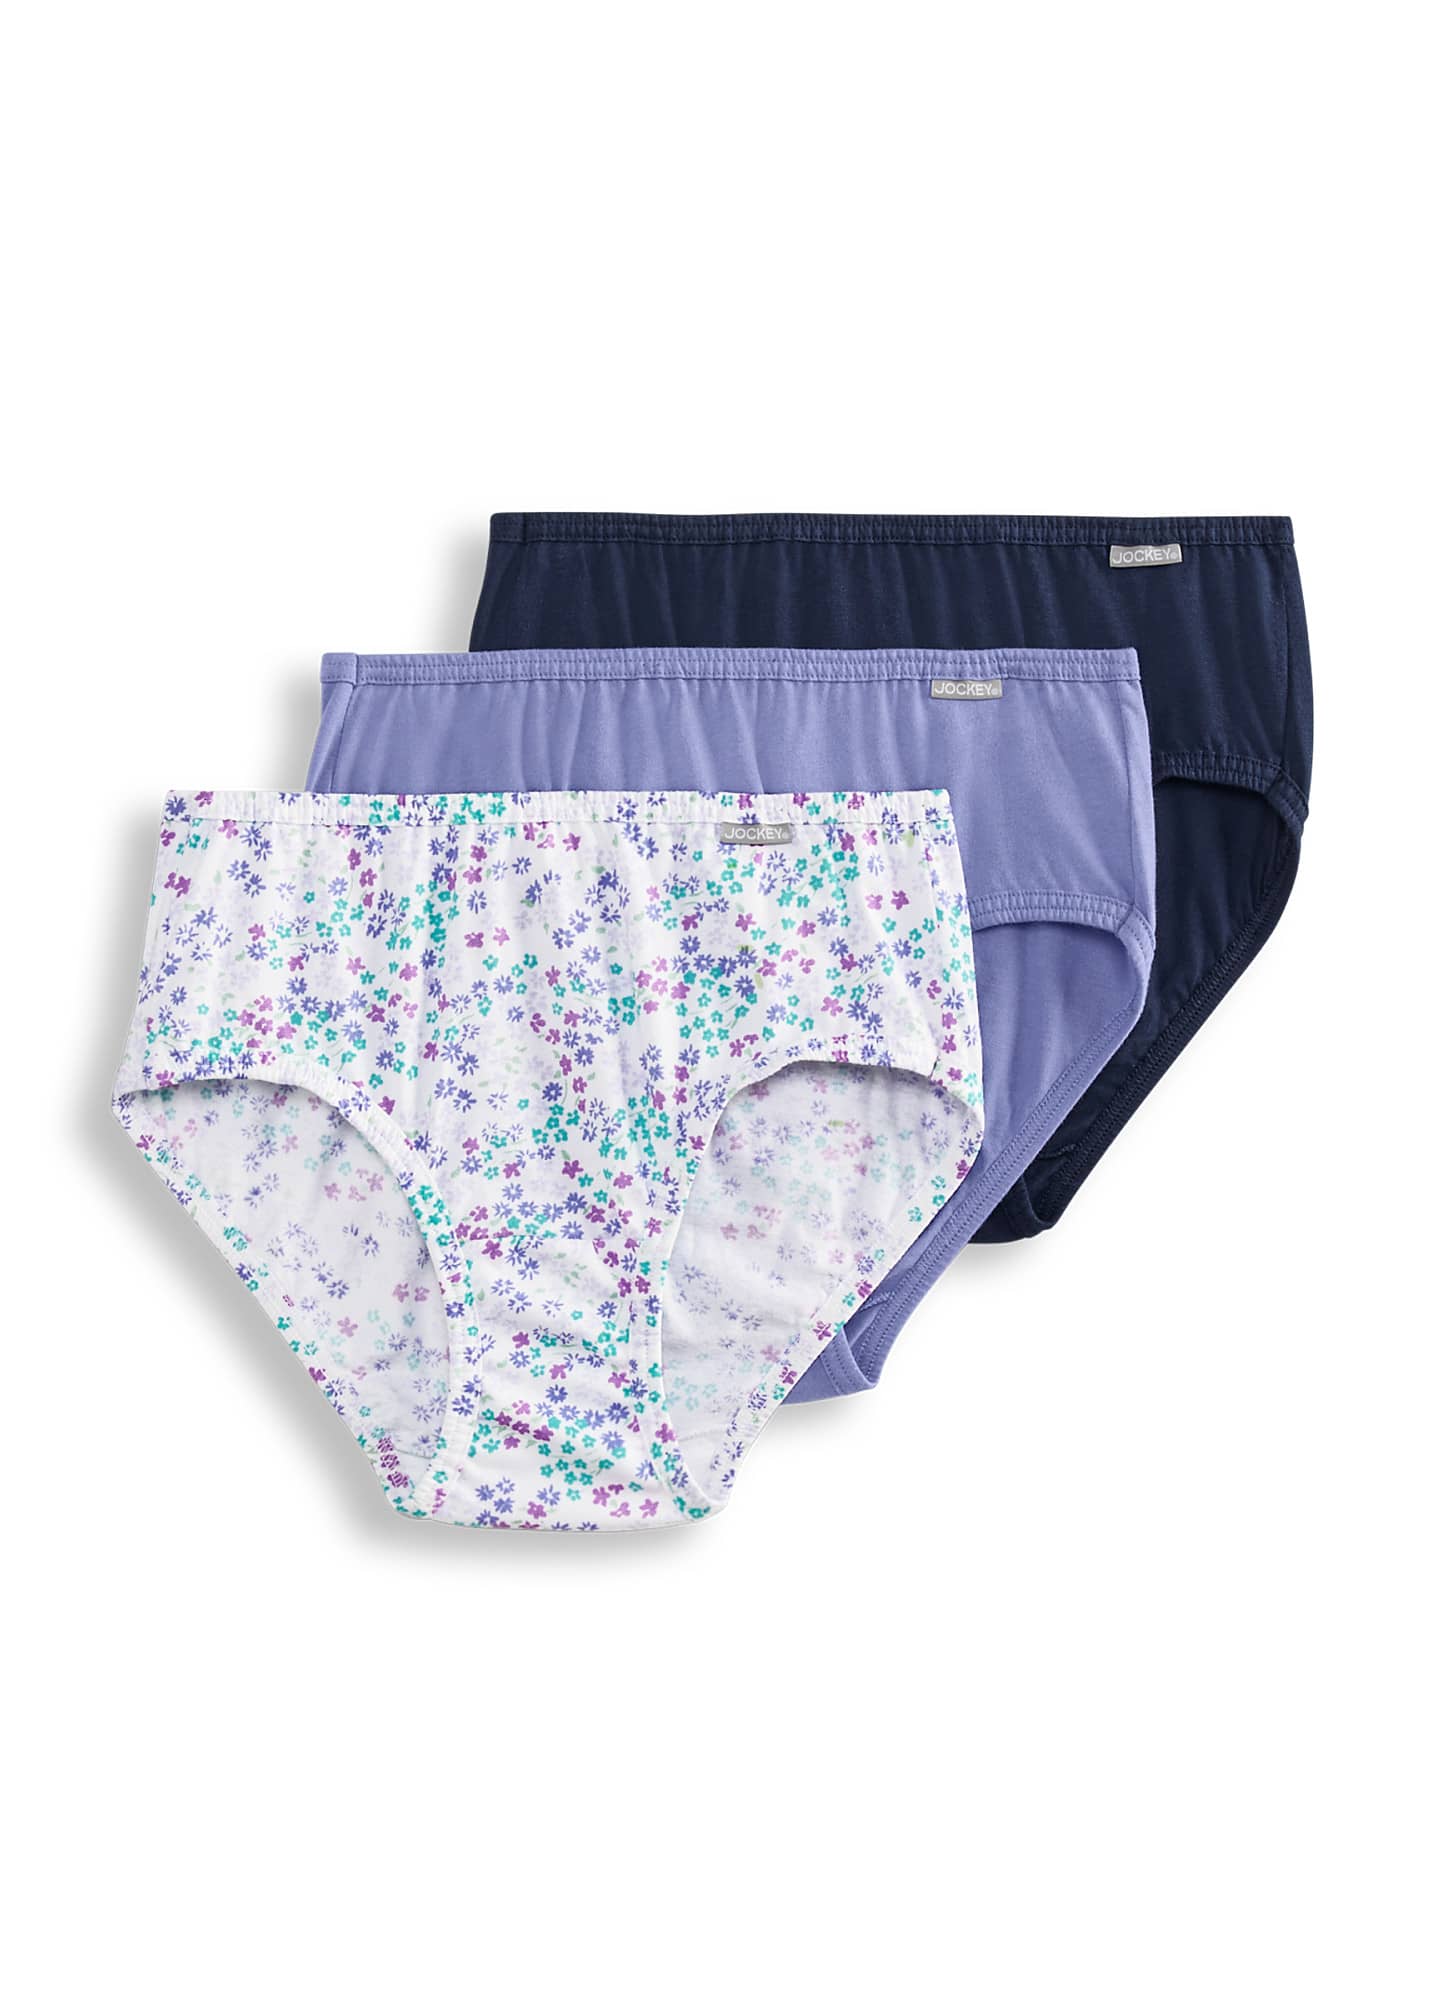 Jockey Panties Women's Underwear Elance Sz 6 HIPSTERS Style 1488 for sale  online